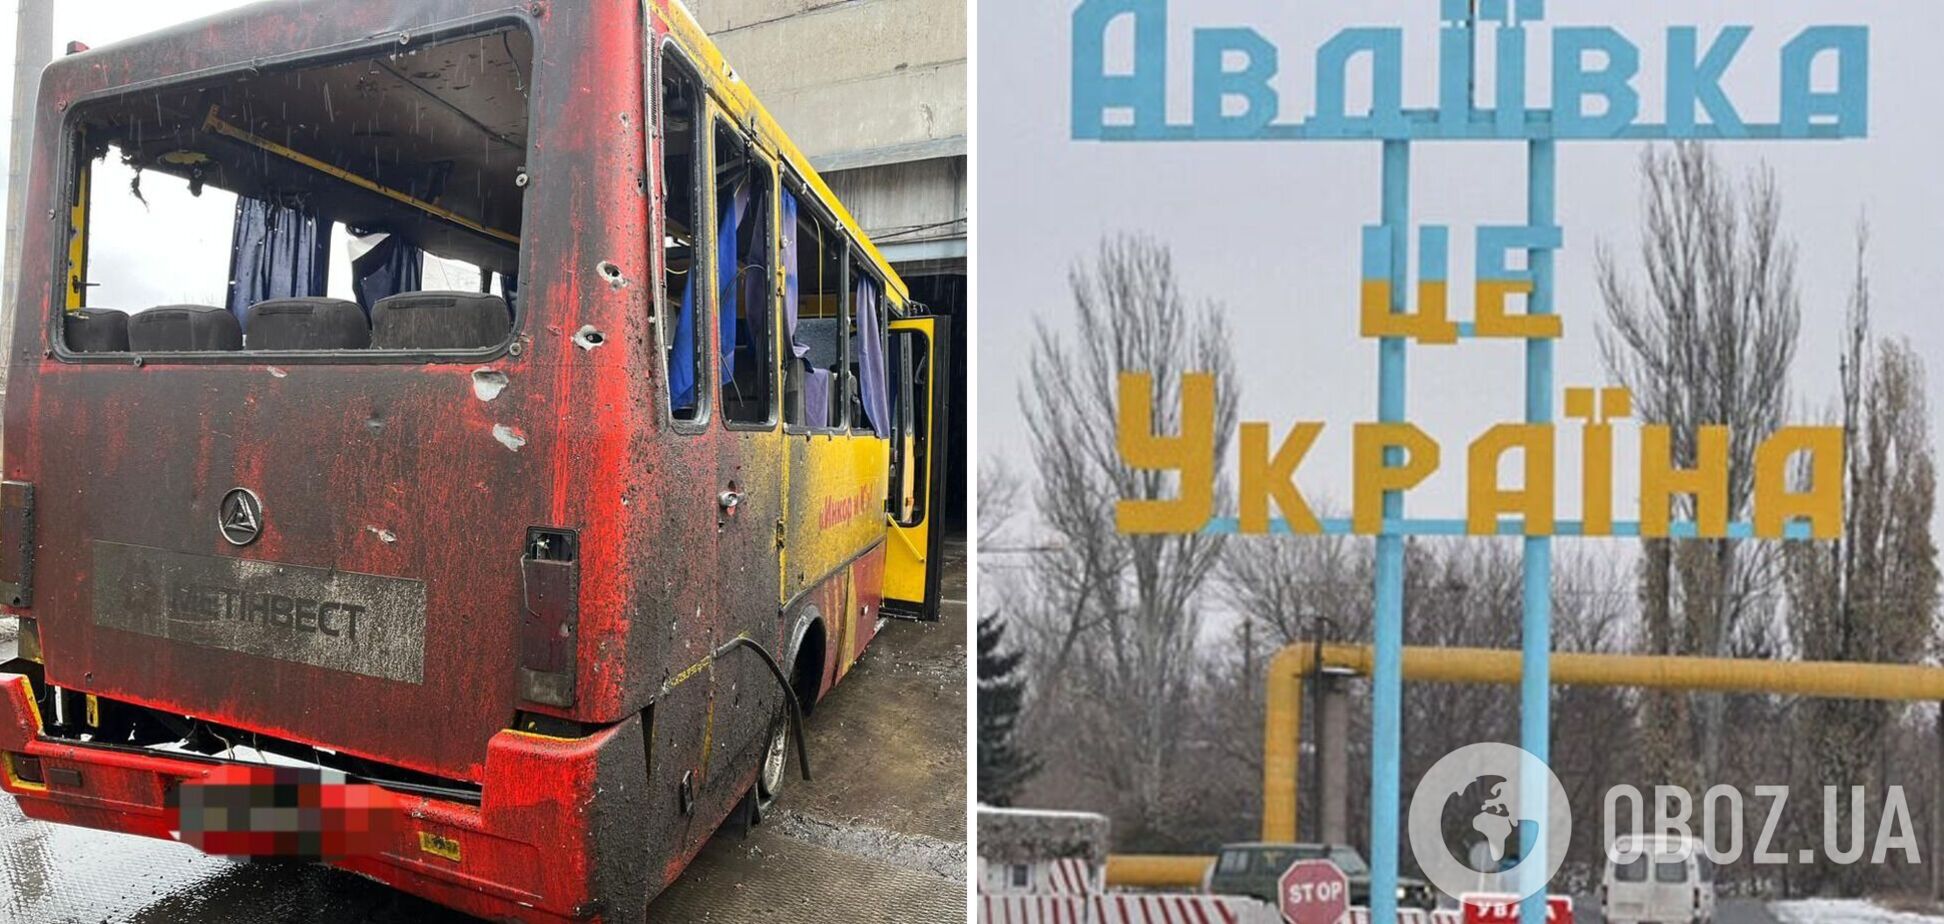 Оккупанты обстреляли автобус в Авдеевке: один человек погиб, еще один ранен. Фото